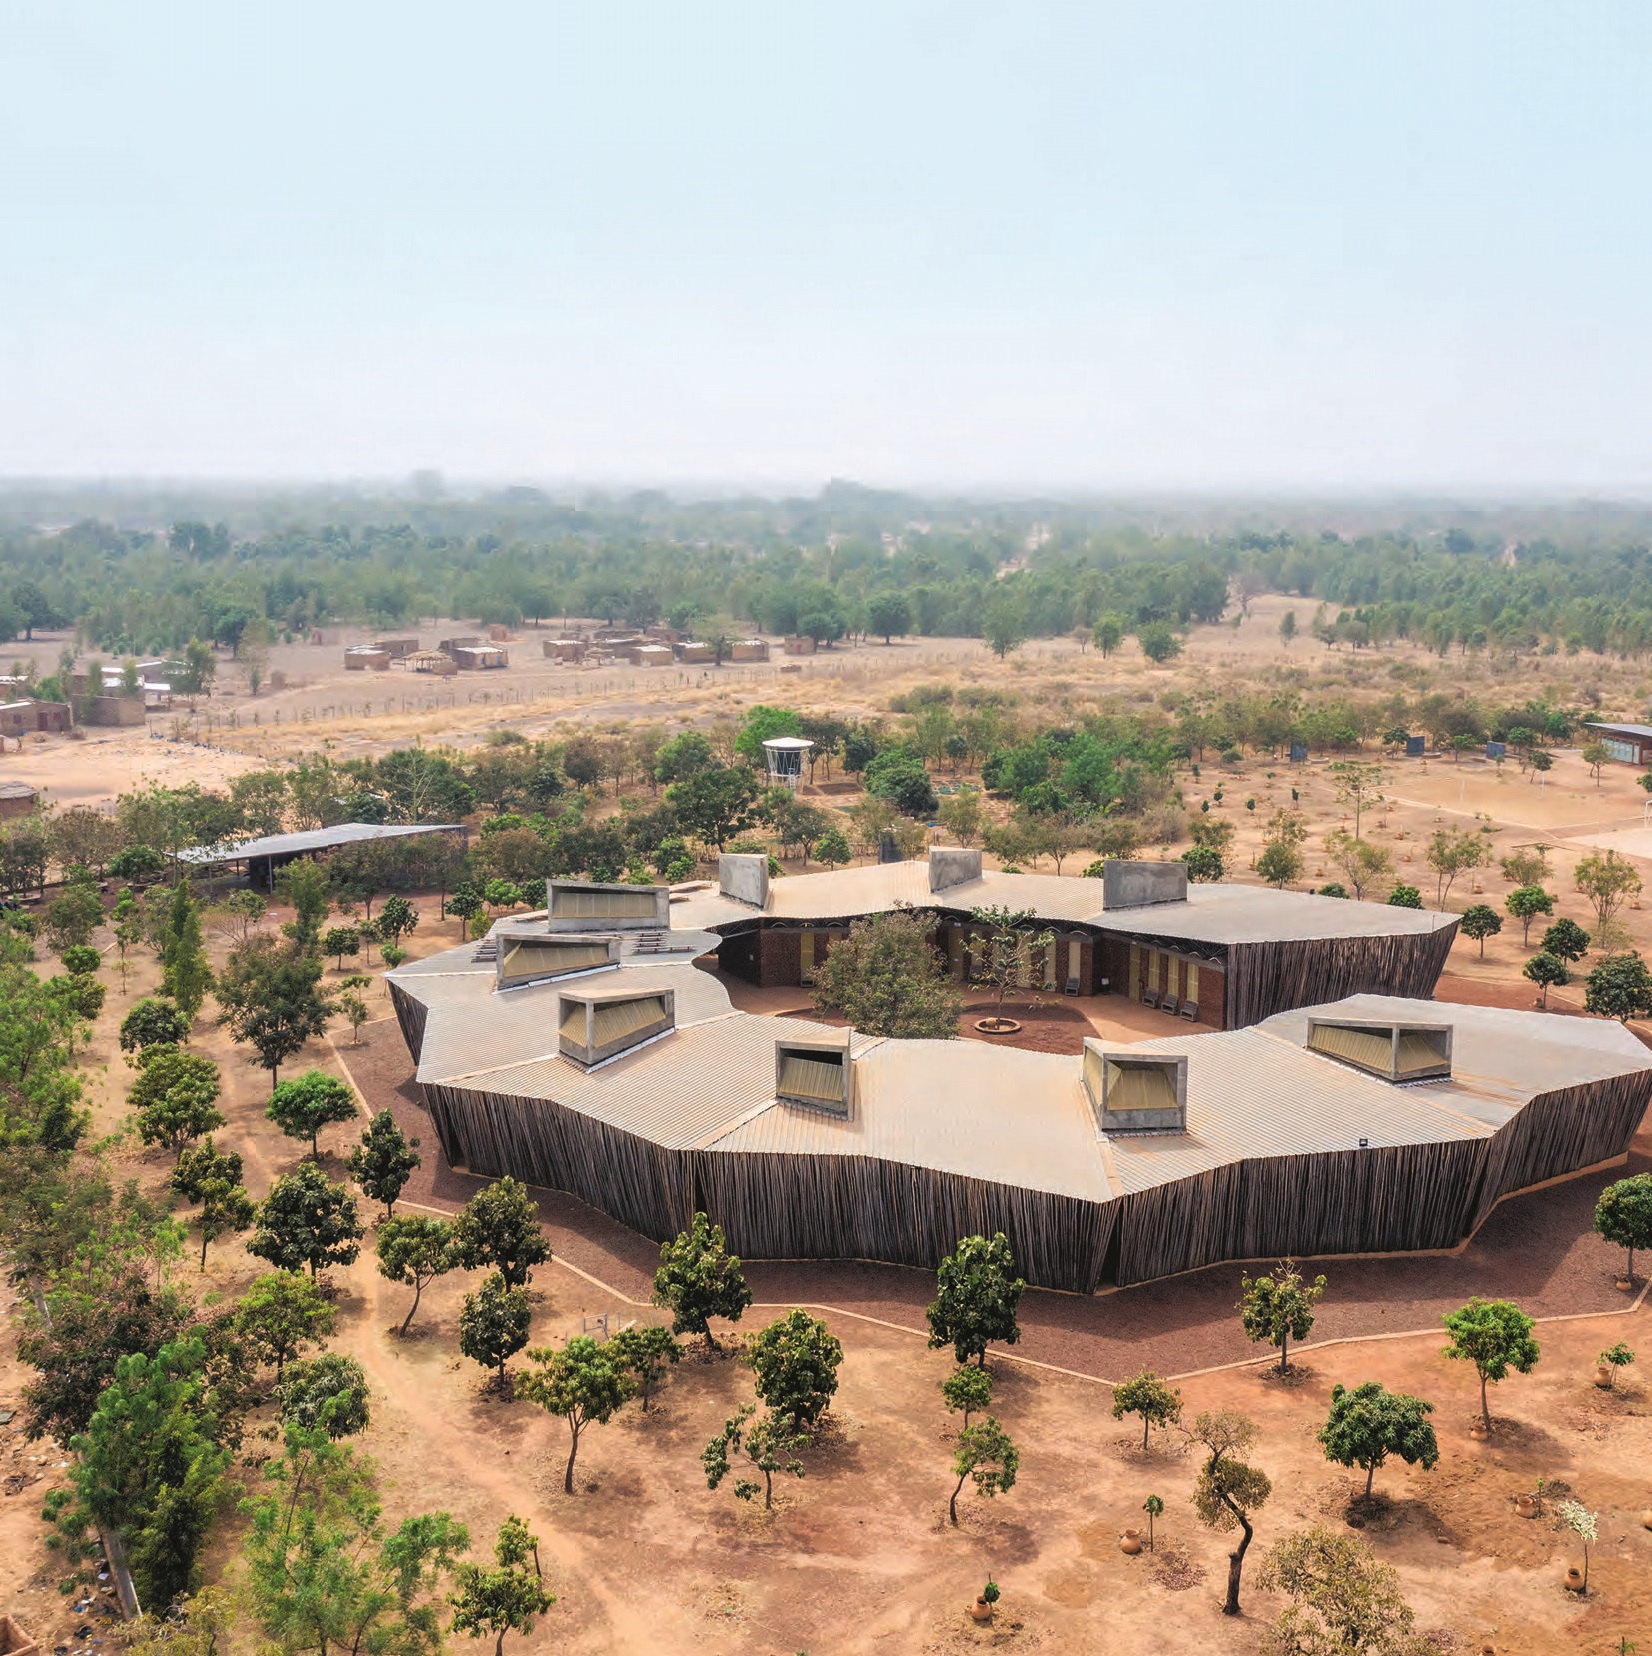 Cette « maison de la célébration » (en langue bissa) est une installation temporaire inspirée par les baobabs. Ses 12 tours invitaient les participants au festival de Coachella en 2019 à se retrouver, à l’abri du soleil et de la chaleur.IWAN BAAN (2)